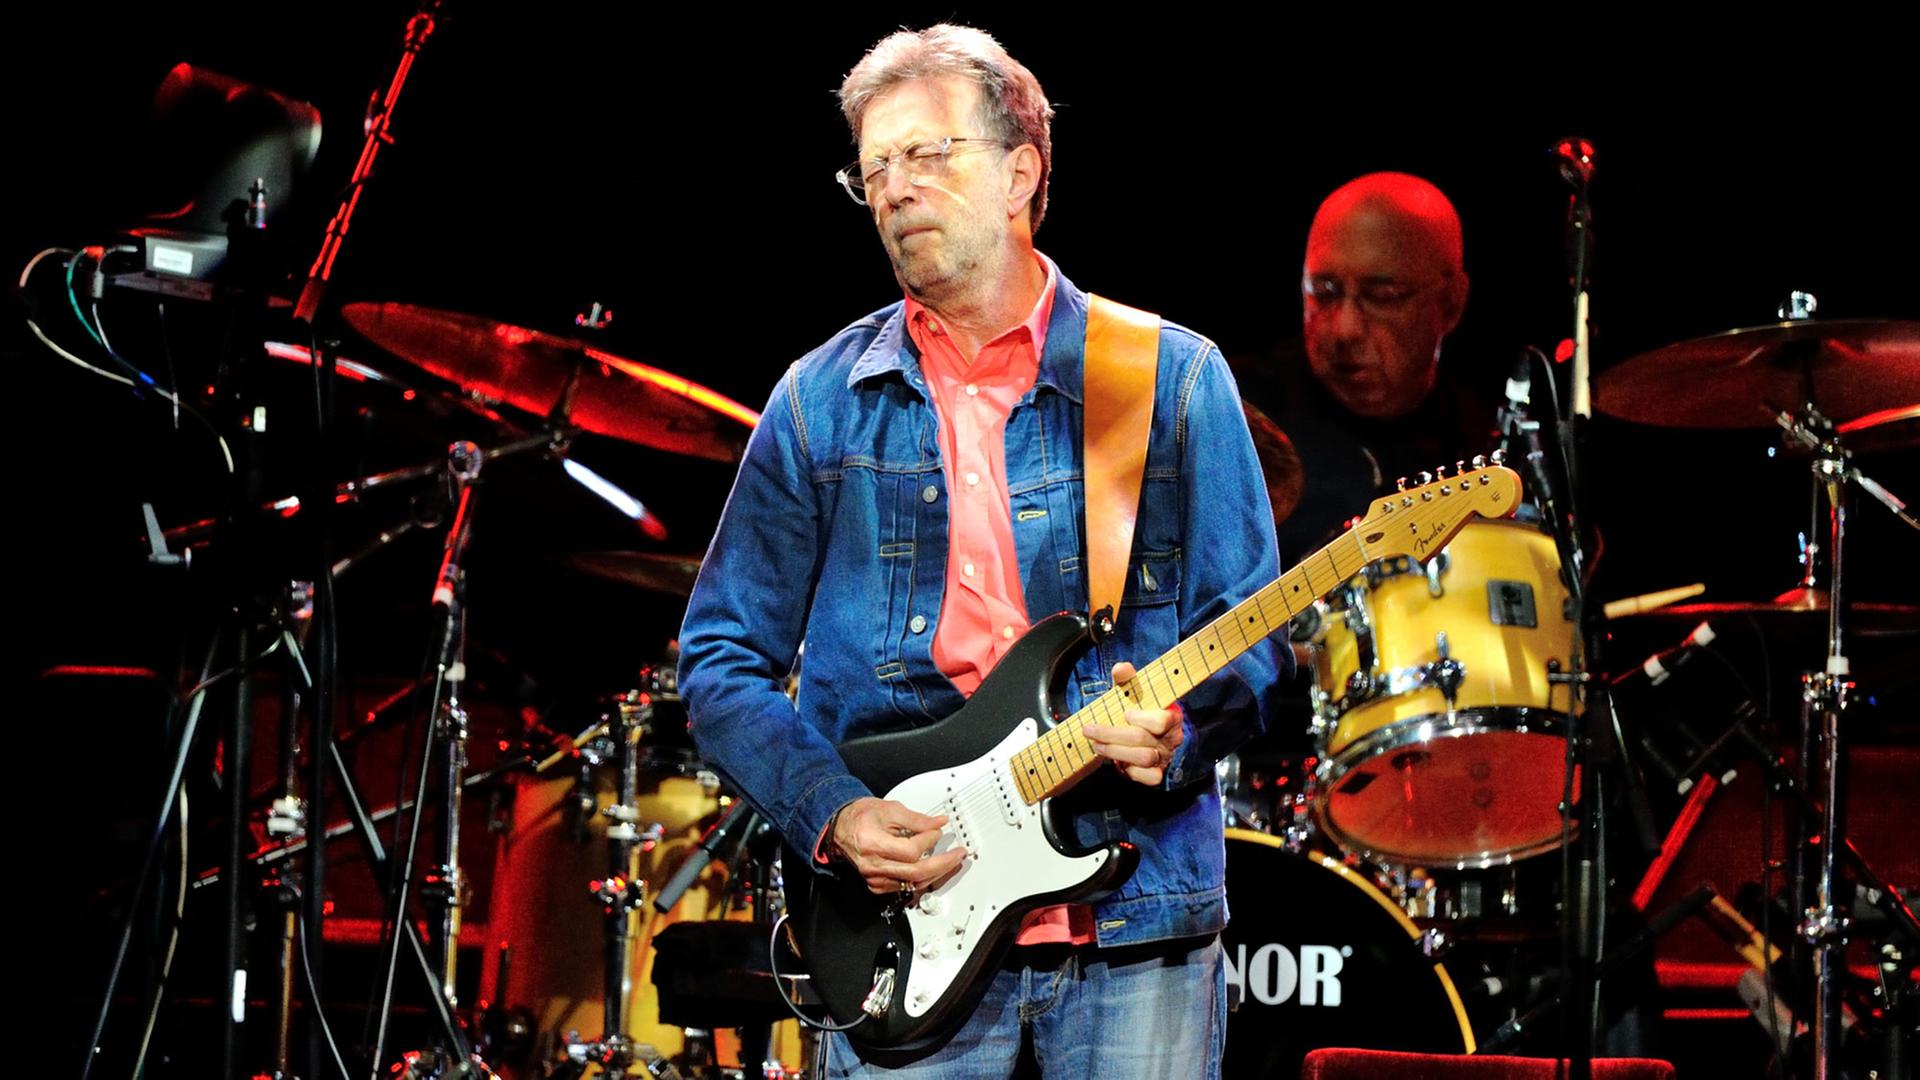 Der Musiker Eric Clapton mit seiner Gitarre auf der Bühne bei einem Auftritt am 24.06.2014 in Mannheim